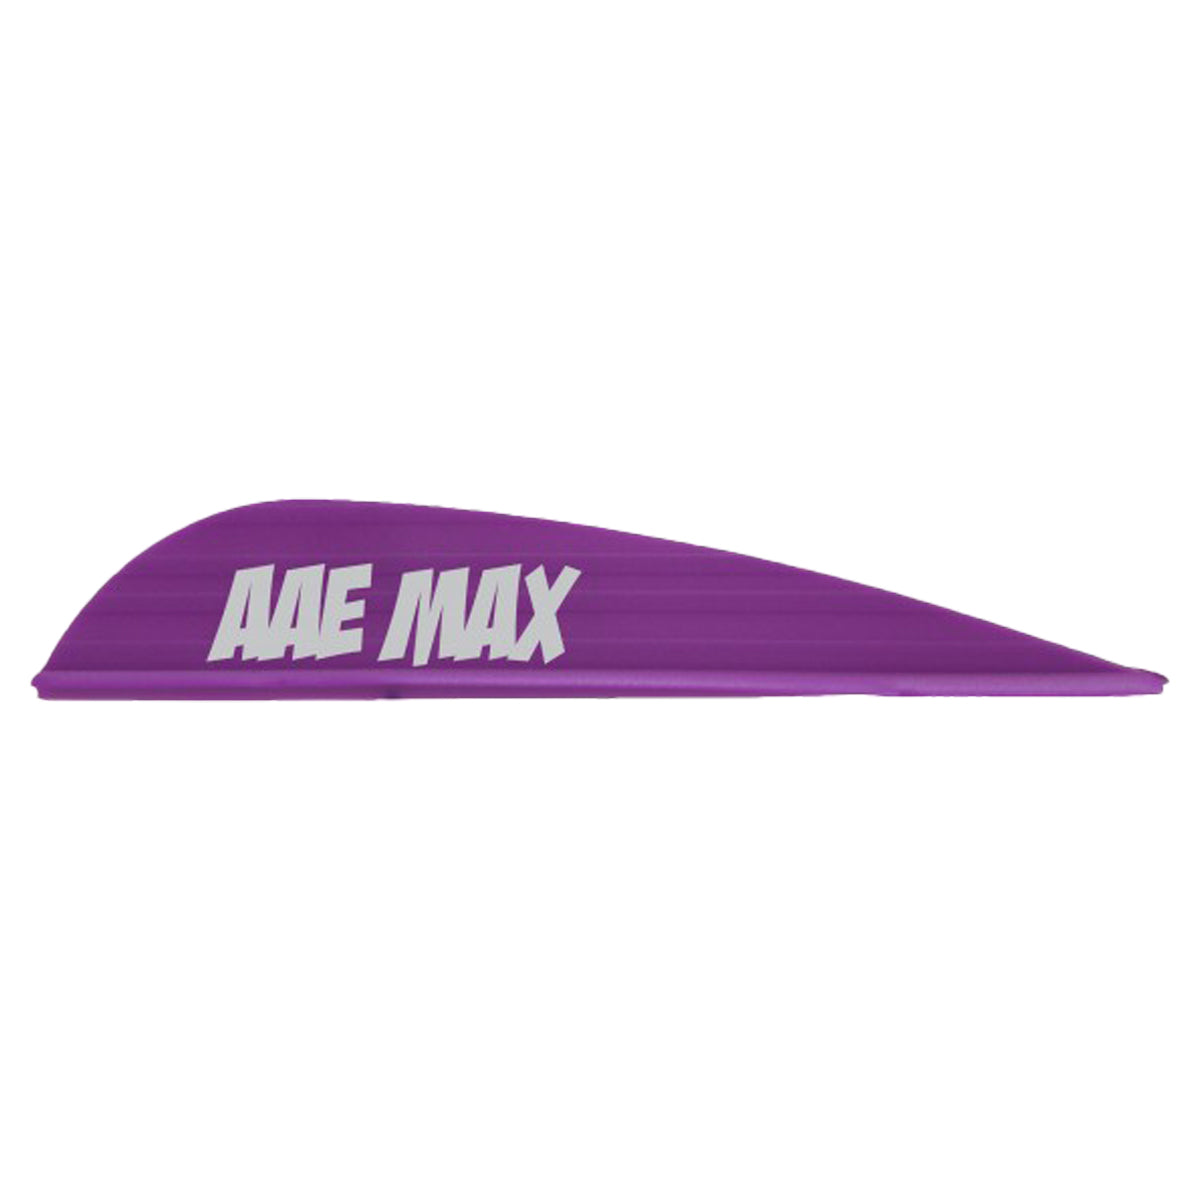 AAE Max Stealth Arrow Vanes - 50 Pack